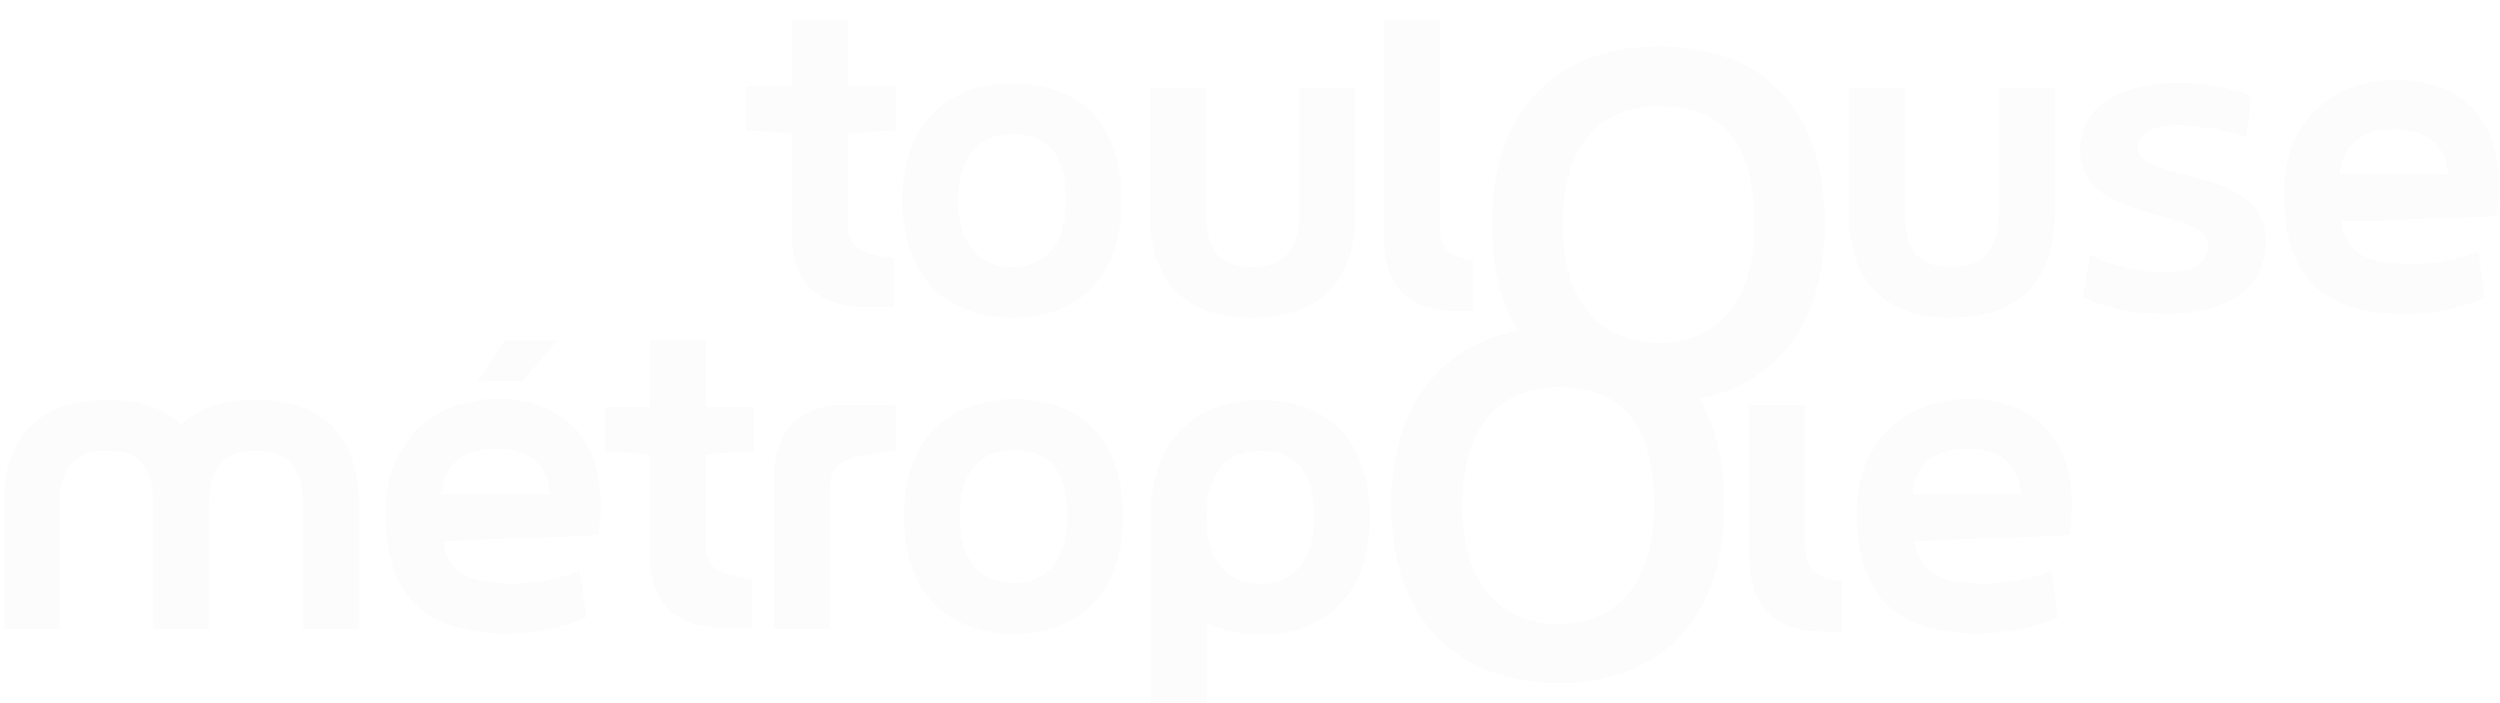 4-logo_toulouse-metropole(blanc-2000).png